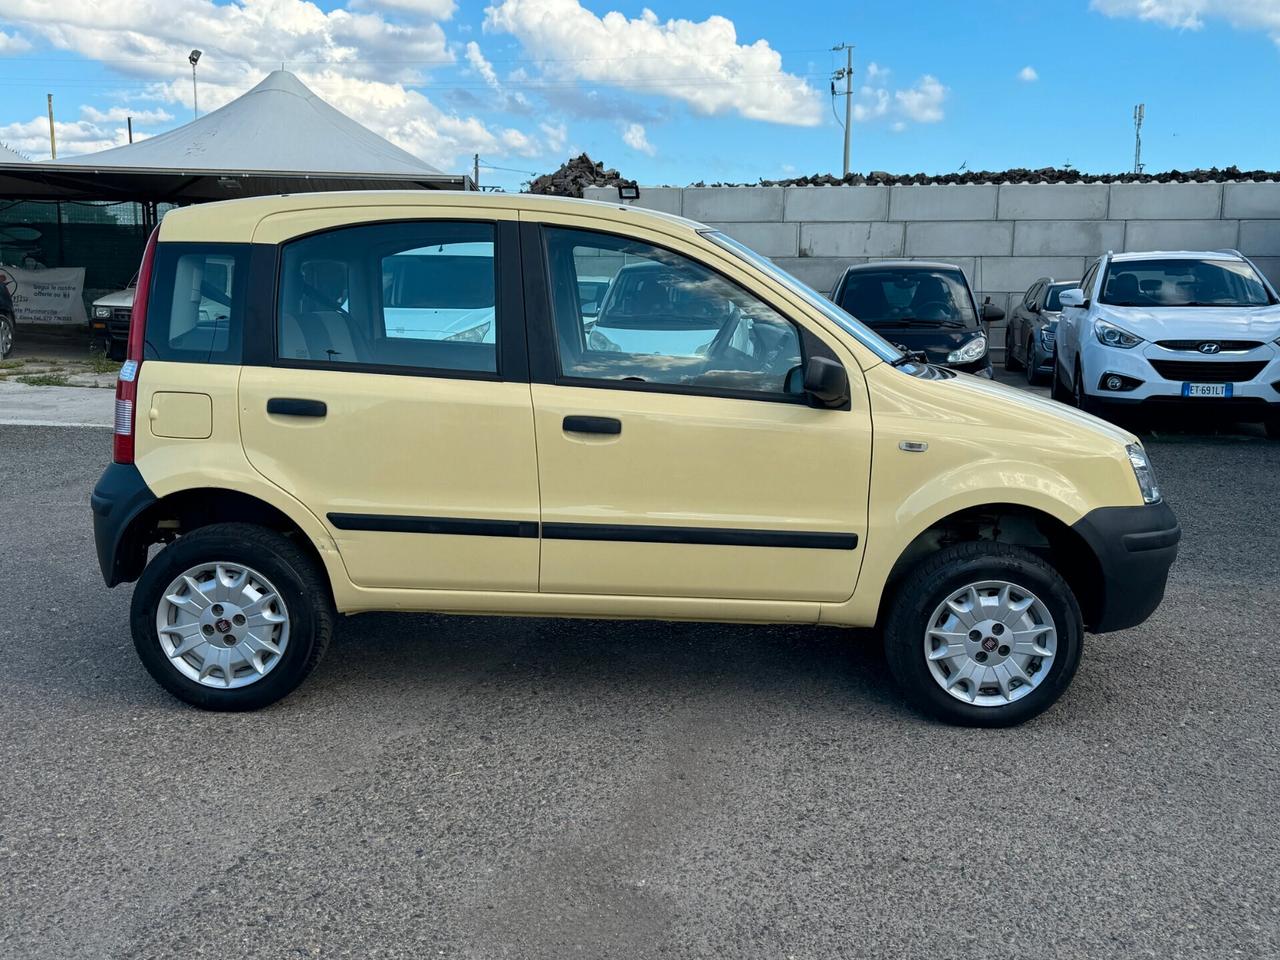 Fiat Panda 1.3 4x4 MJT 70 CV - 2008